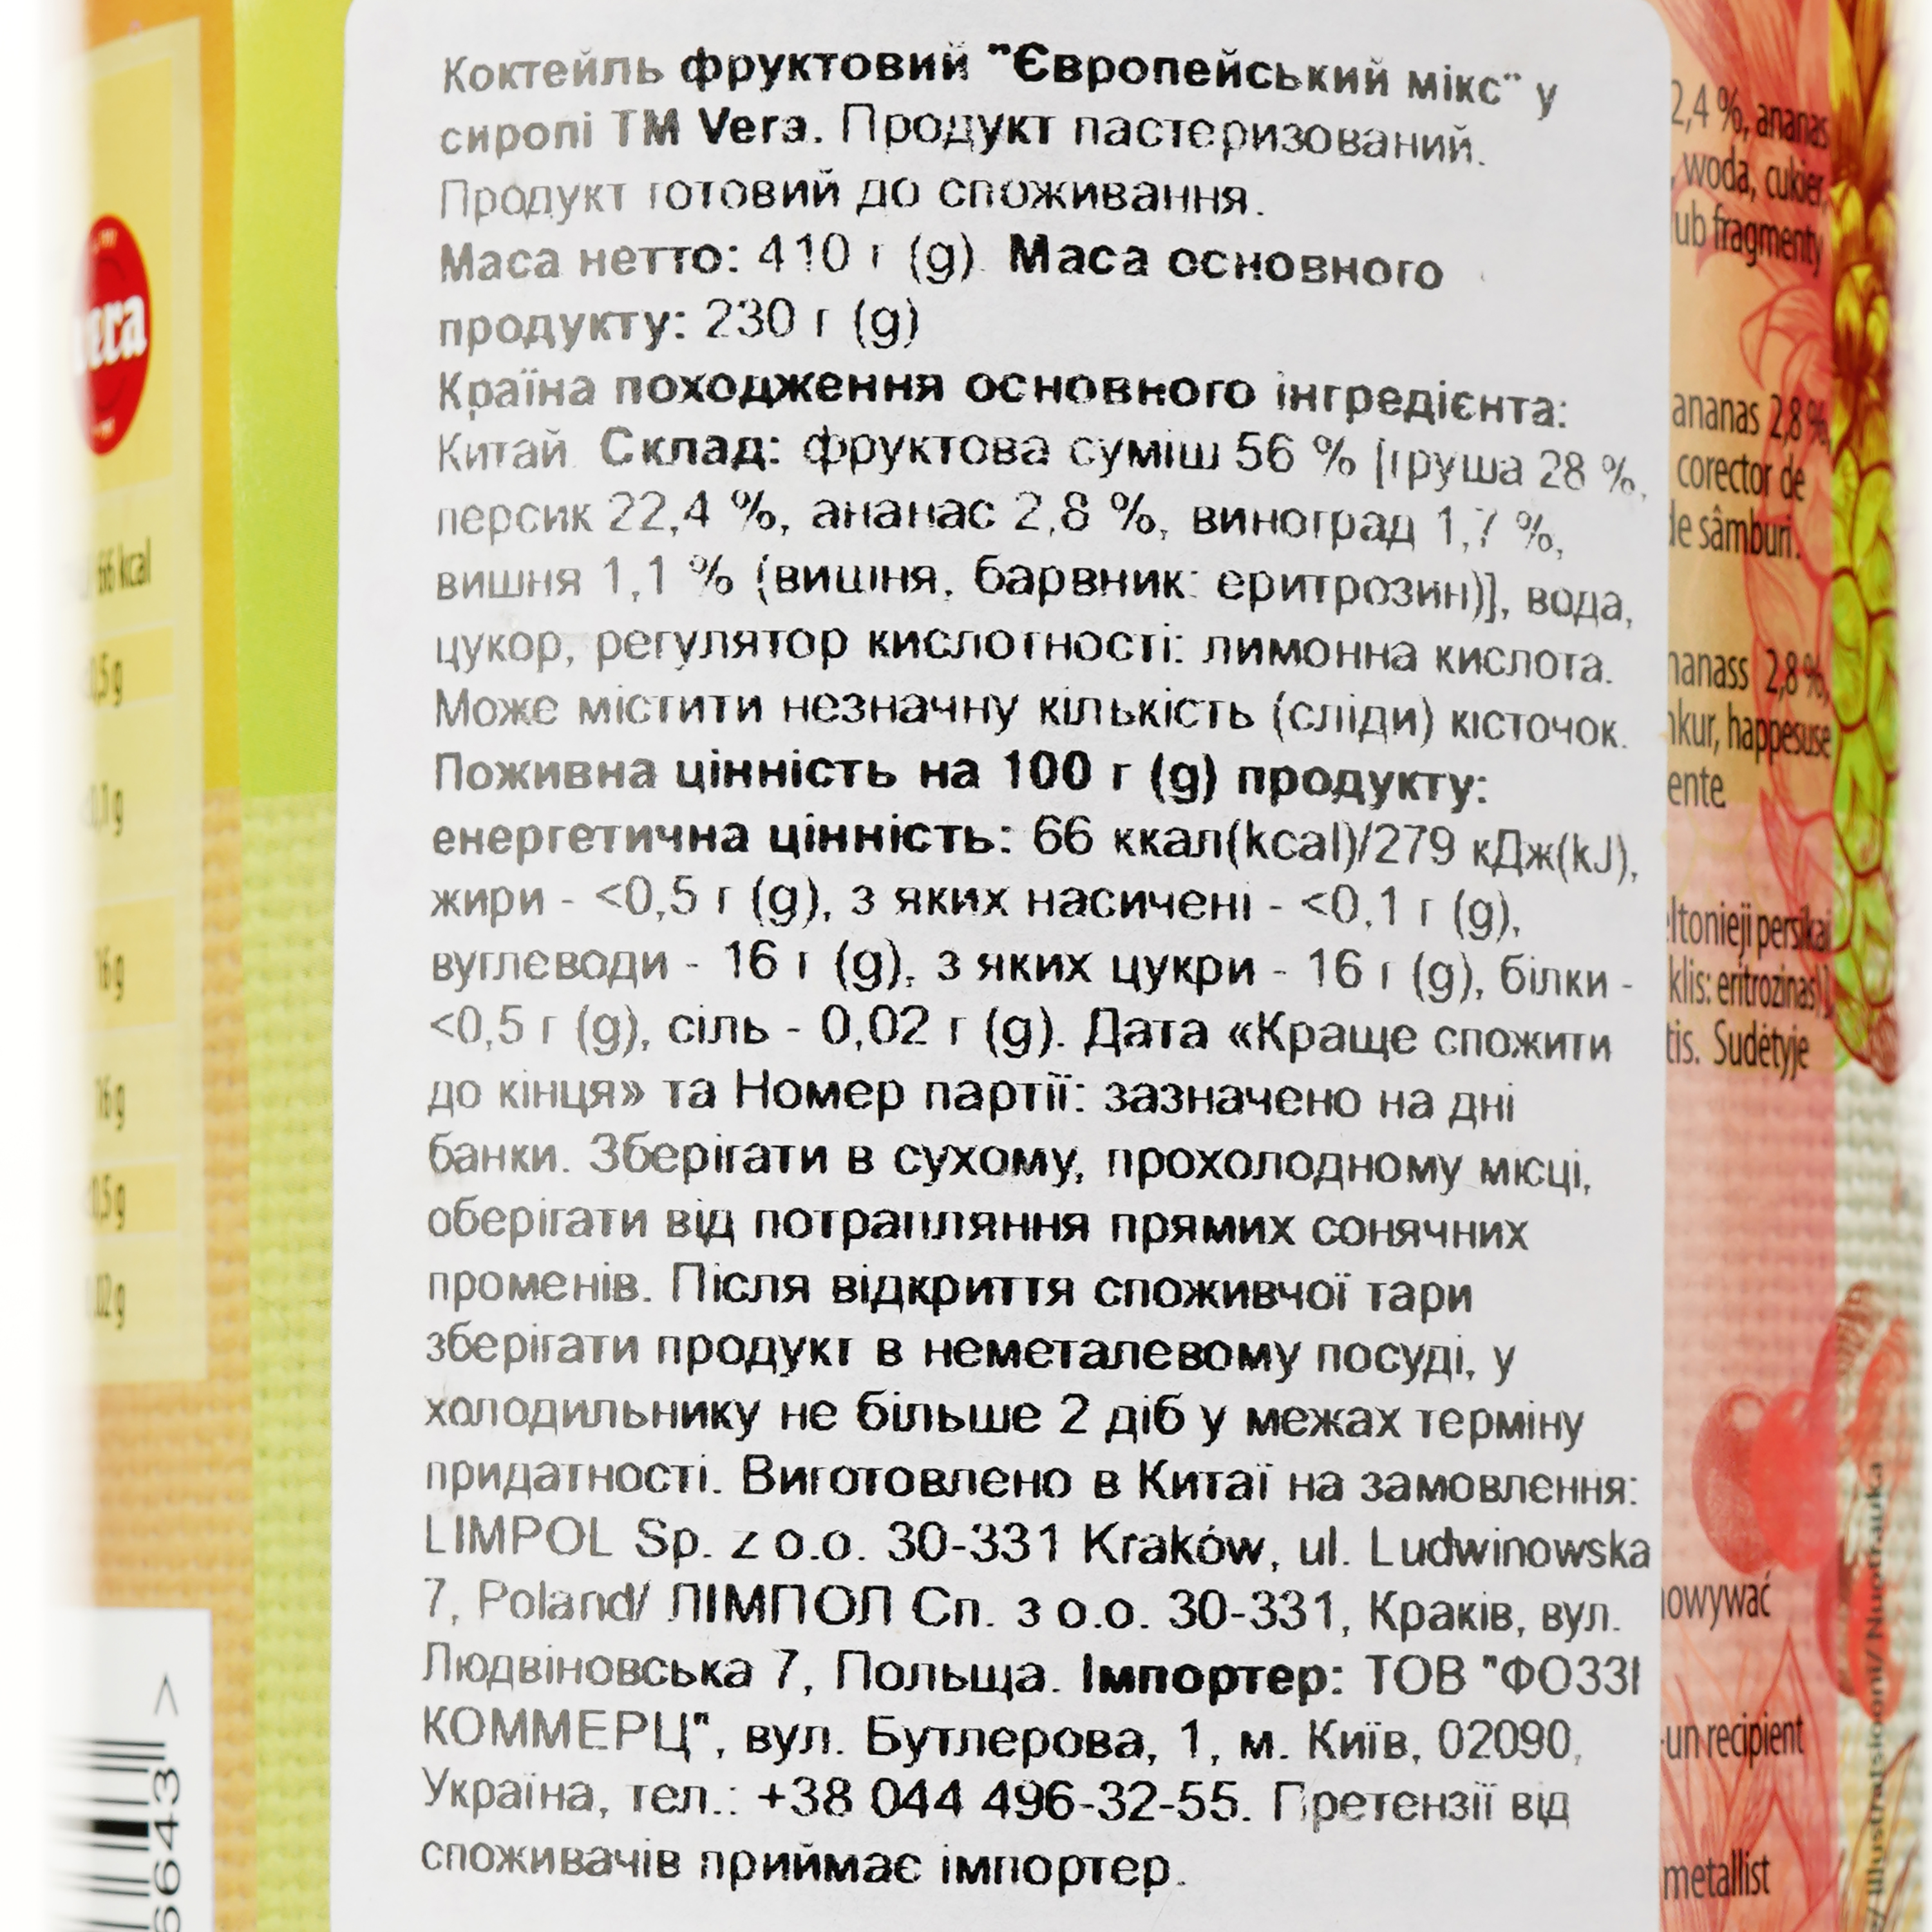 Коктейль Vera Koktajl Owocowy, фруктовий мікс у сиропі, 410 г - фото 3